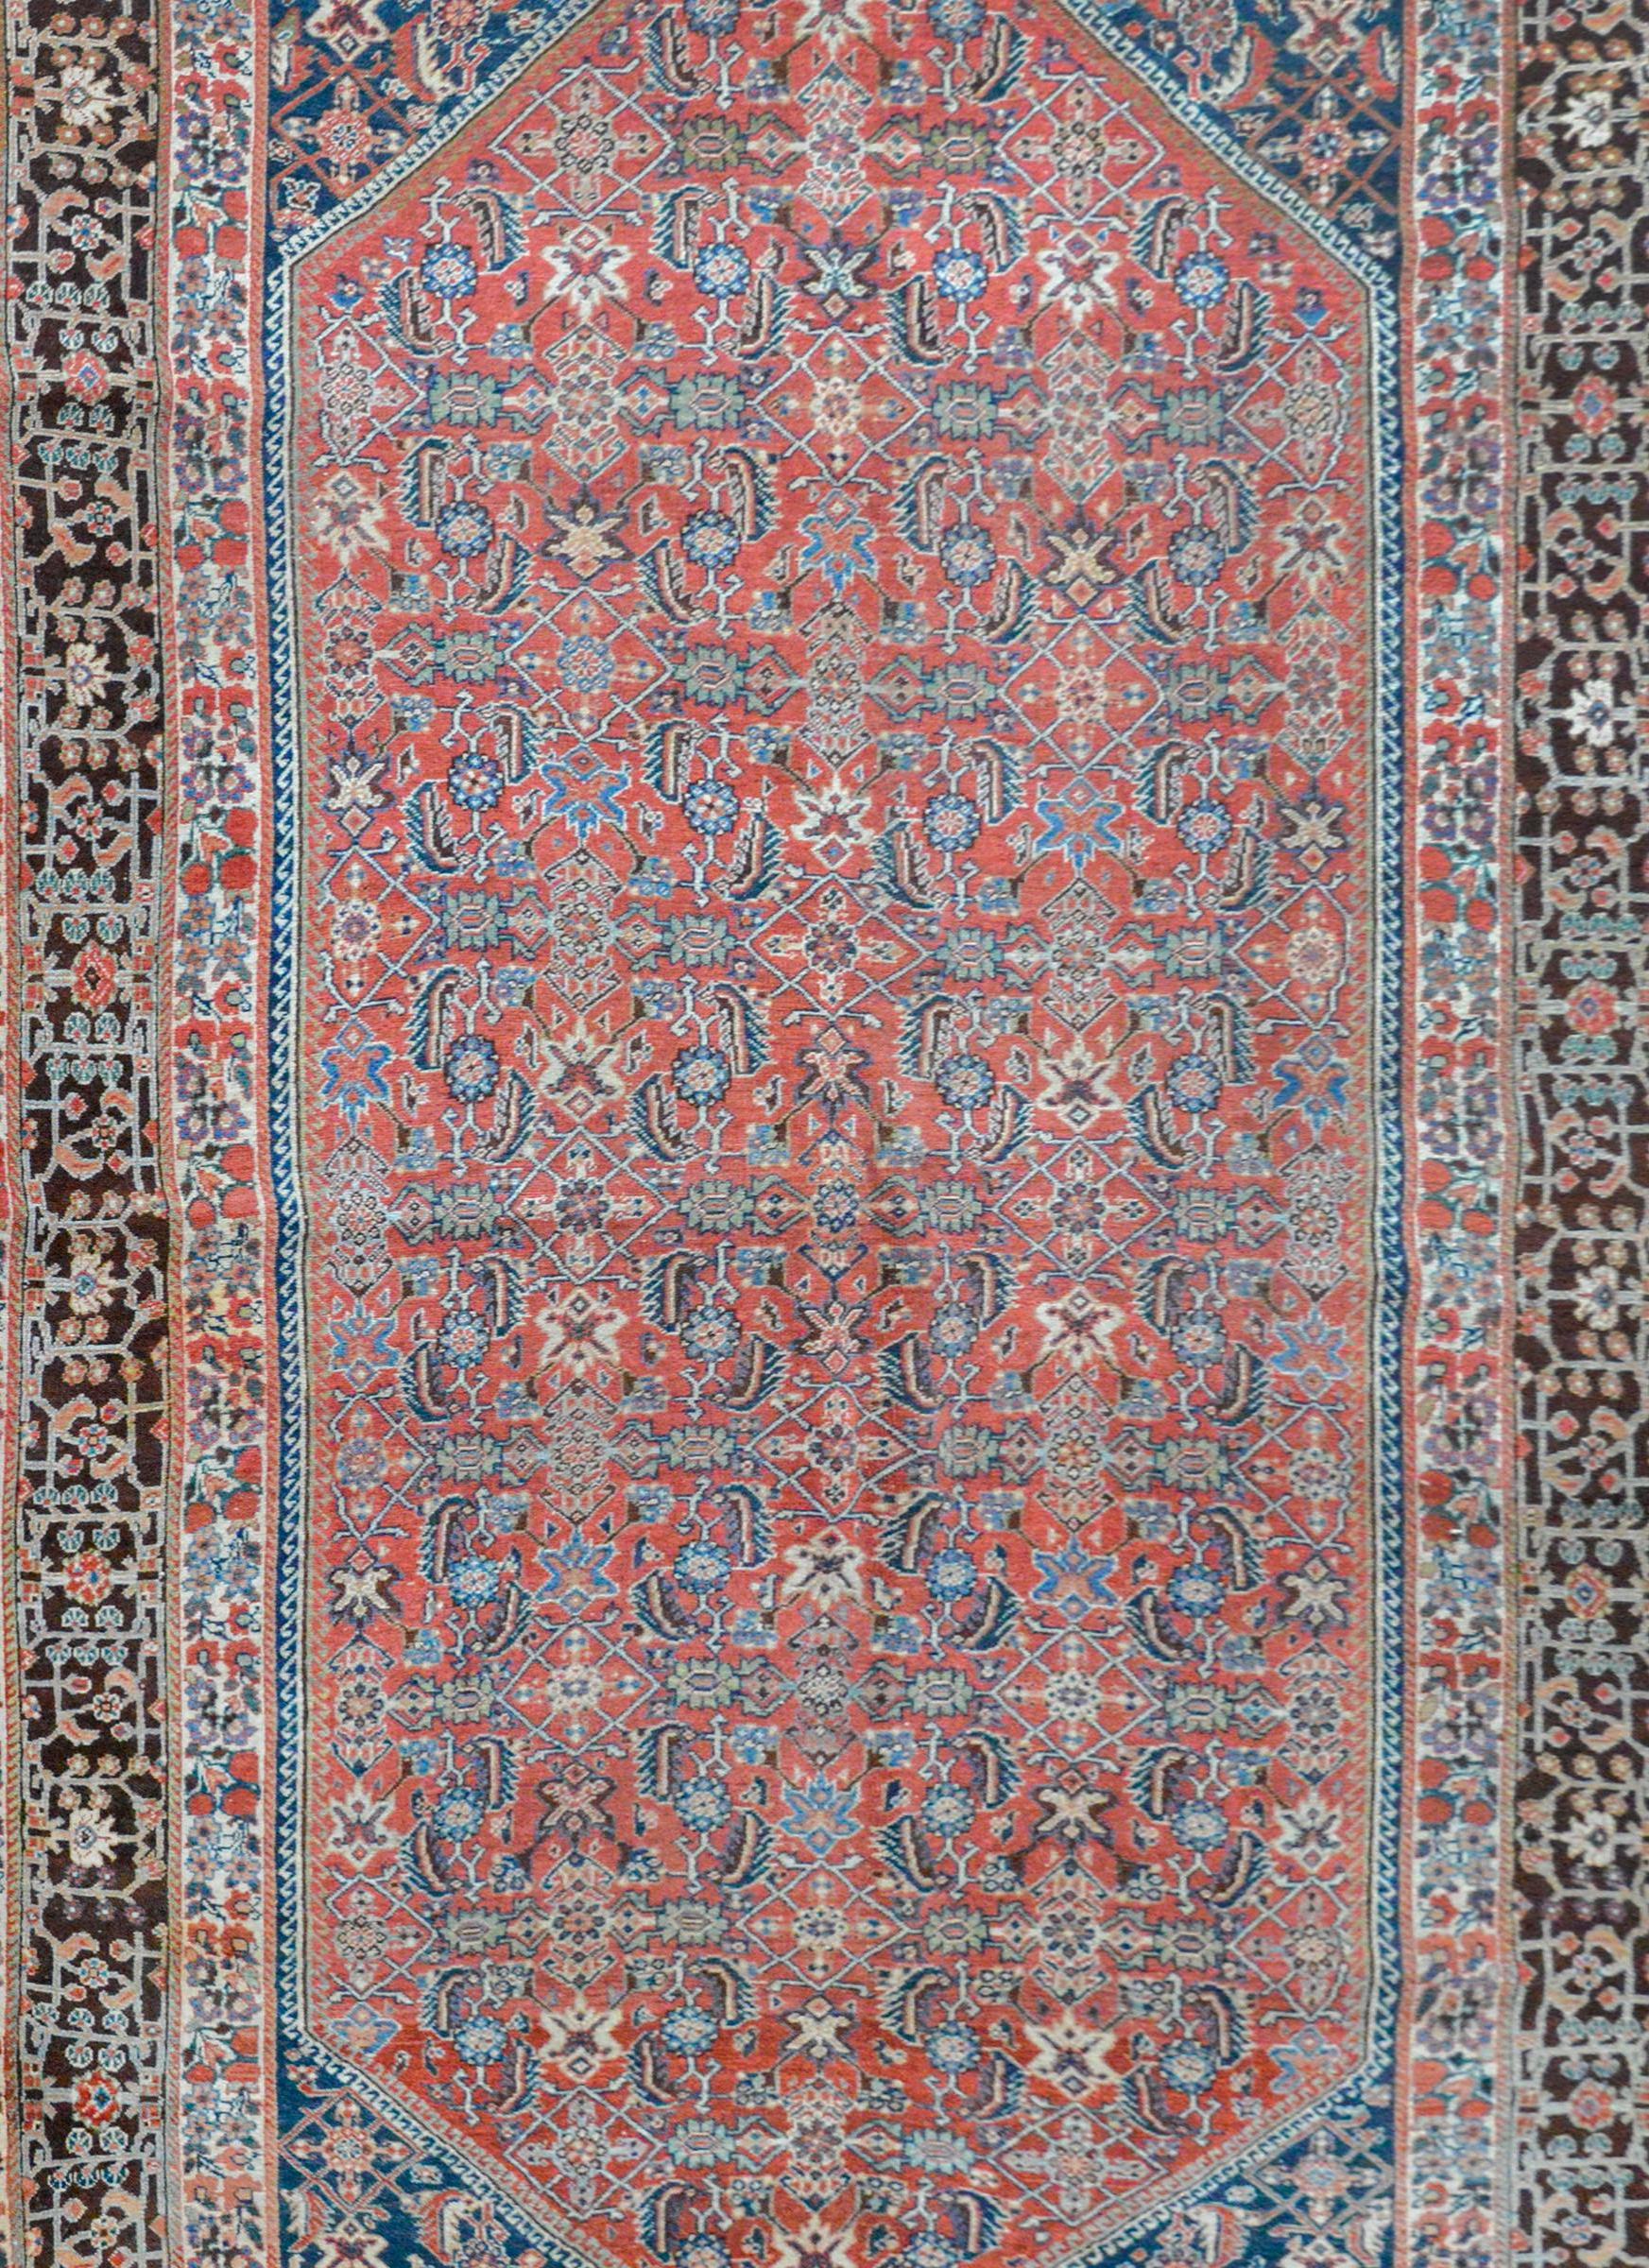 Ein schöner persischer Gashgaei-Teppich aus dem frühen 20. Jahrhundert mit einem floralen Spaliermuster, gewebt aus purpurroter, hell- und dunkelindigoblauer, weißer und blassgrüner, pflanzengefärbter Wolle auf purpurnem Hintergrund. Die Bordüre ist